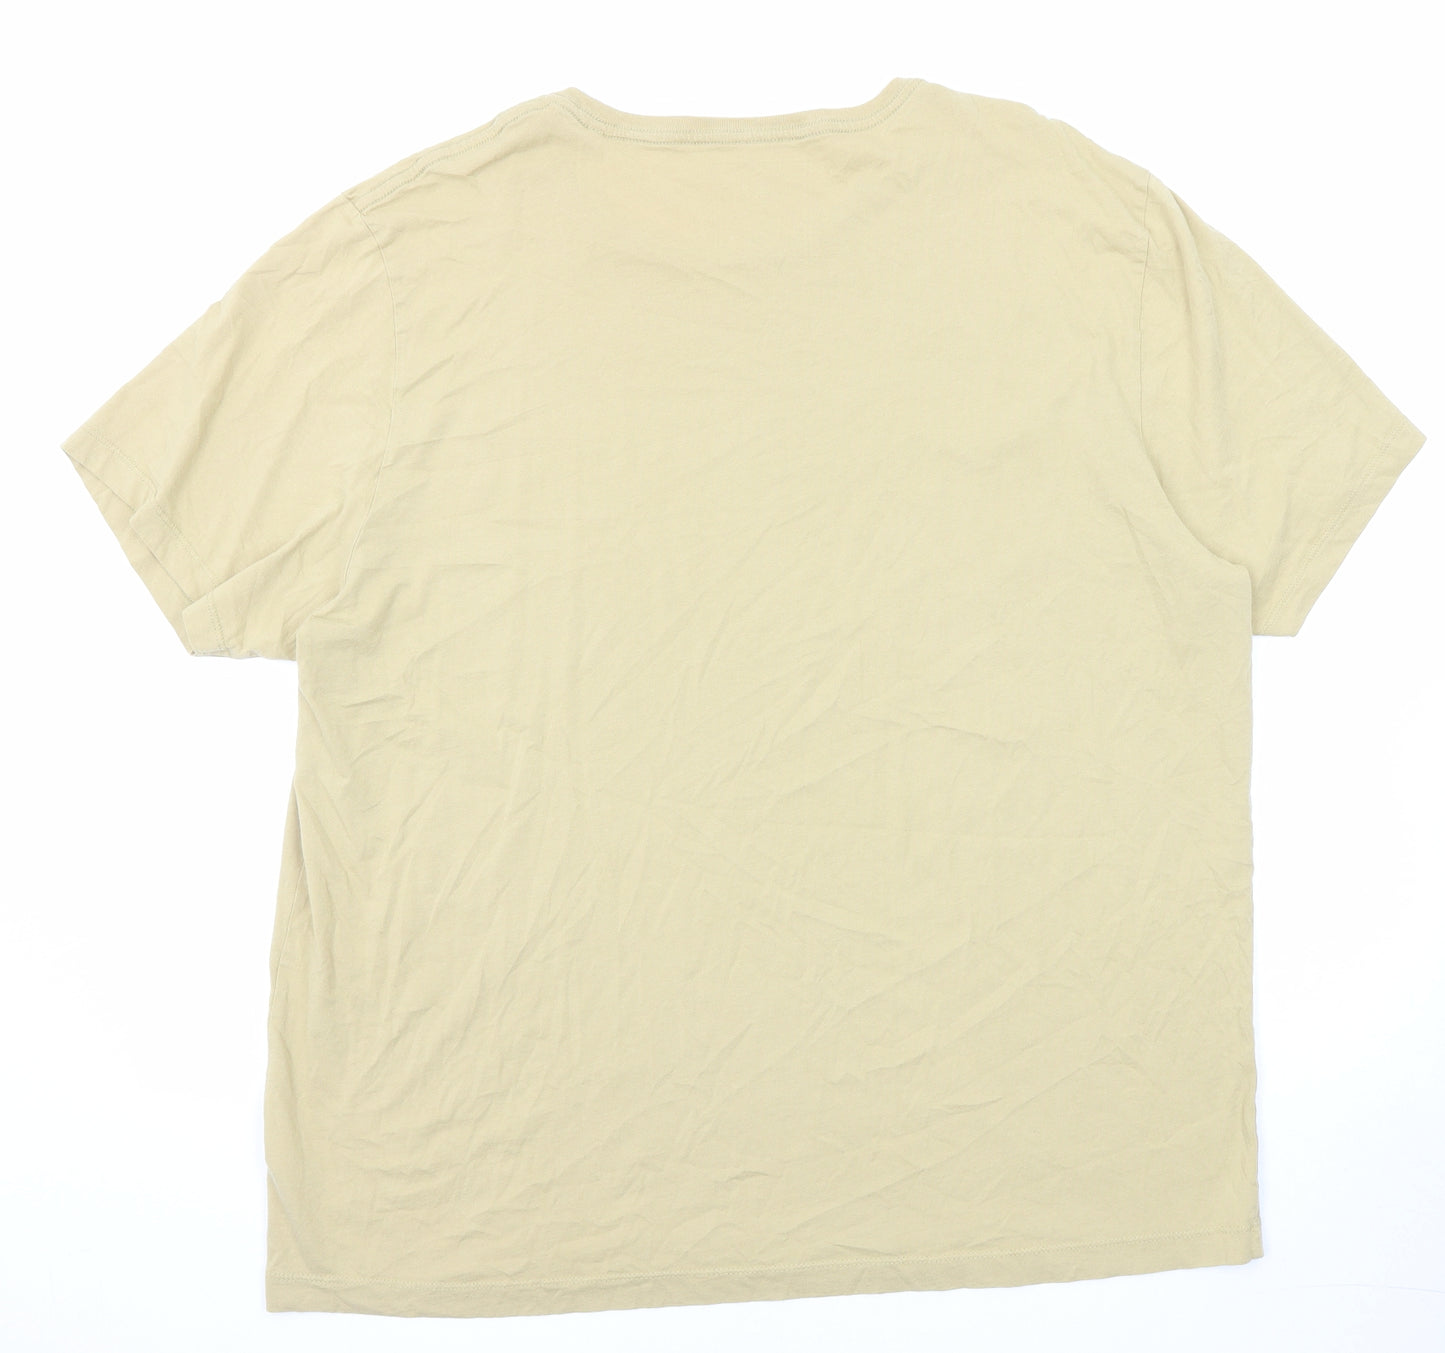 NEXT Mens Beige Cotton T-Shirt Size 2XL Round Neck